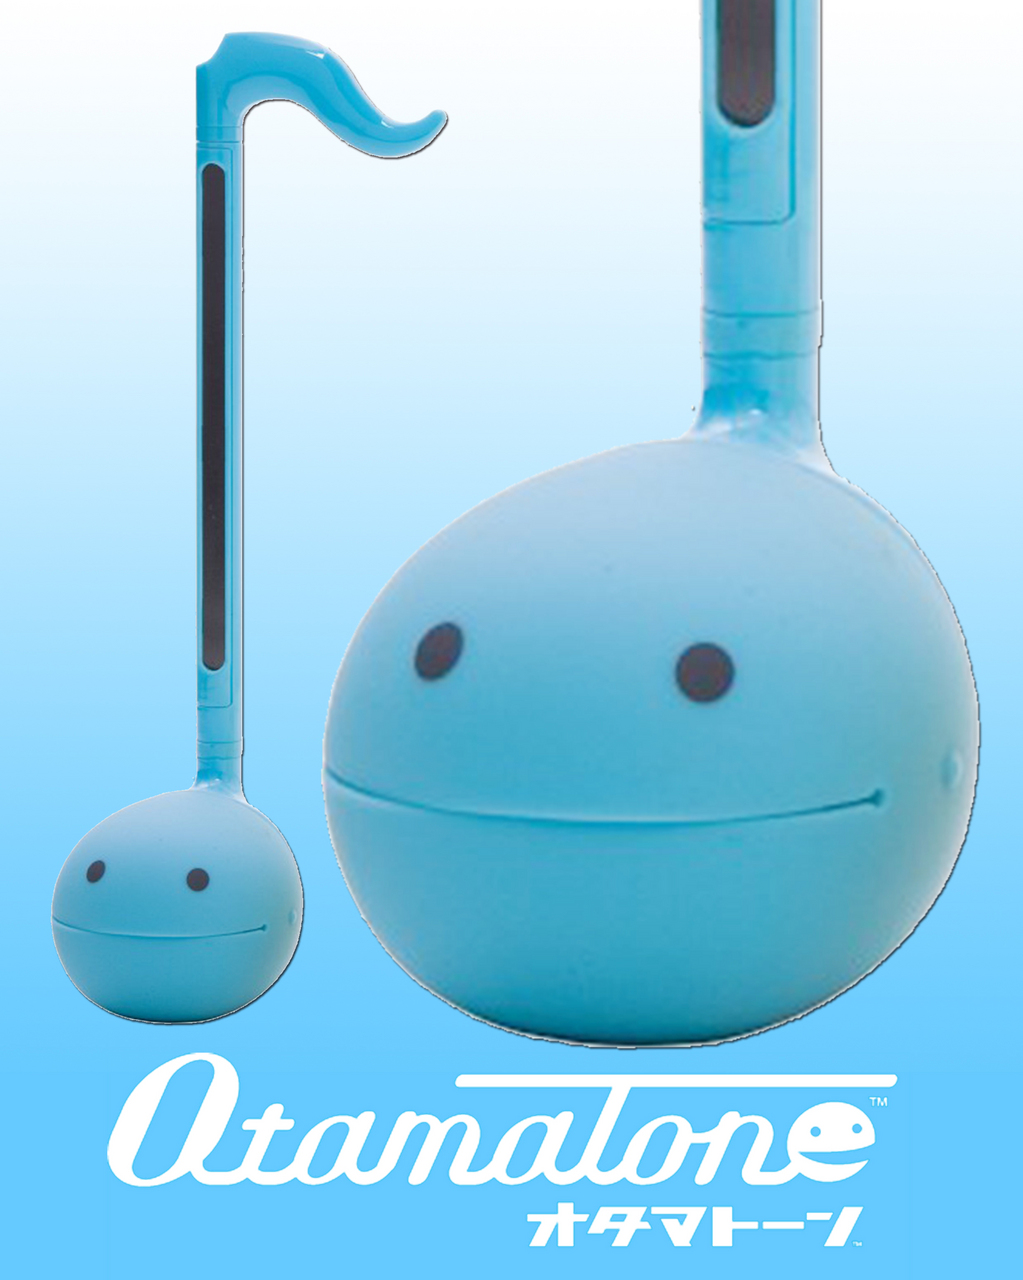 明和電機 Otamatone Colors オタマトーン カラーズ ブルー 【SNSで話題に!】（新品）【楽器検索デジマート】